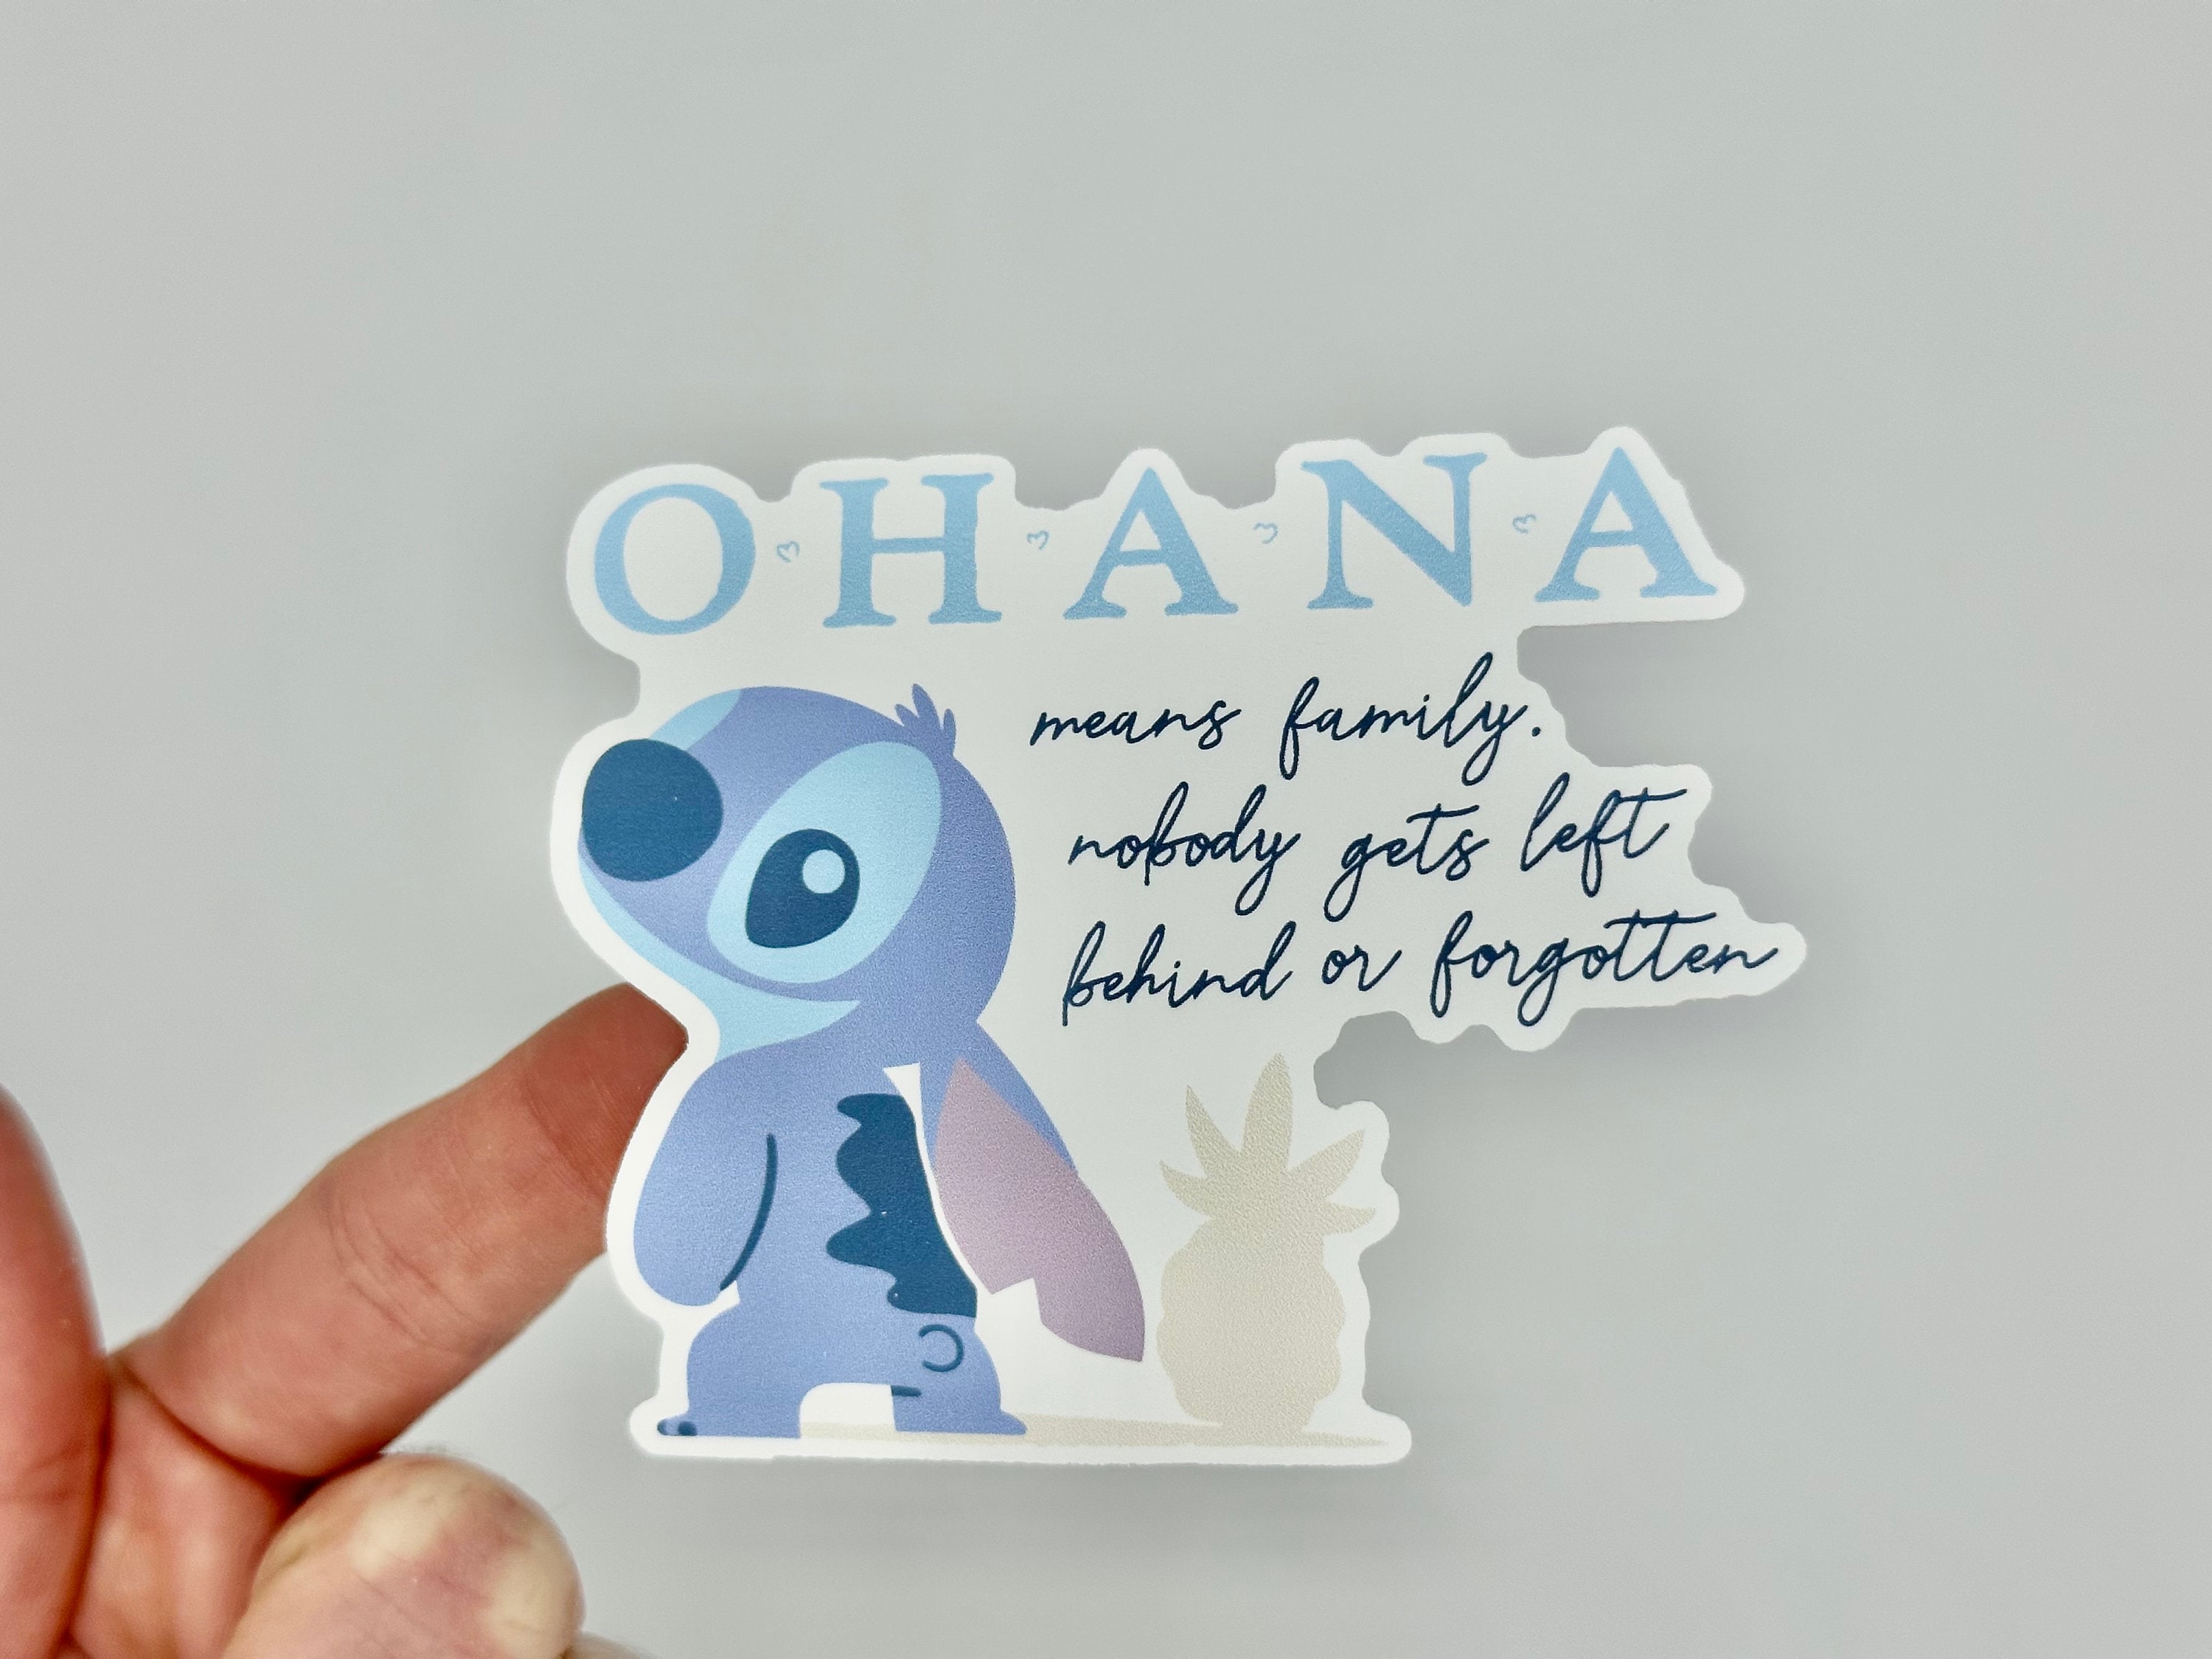 Pochette d'autocollants irisés Disney Lilo & Stitch